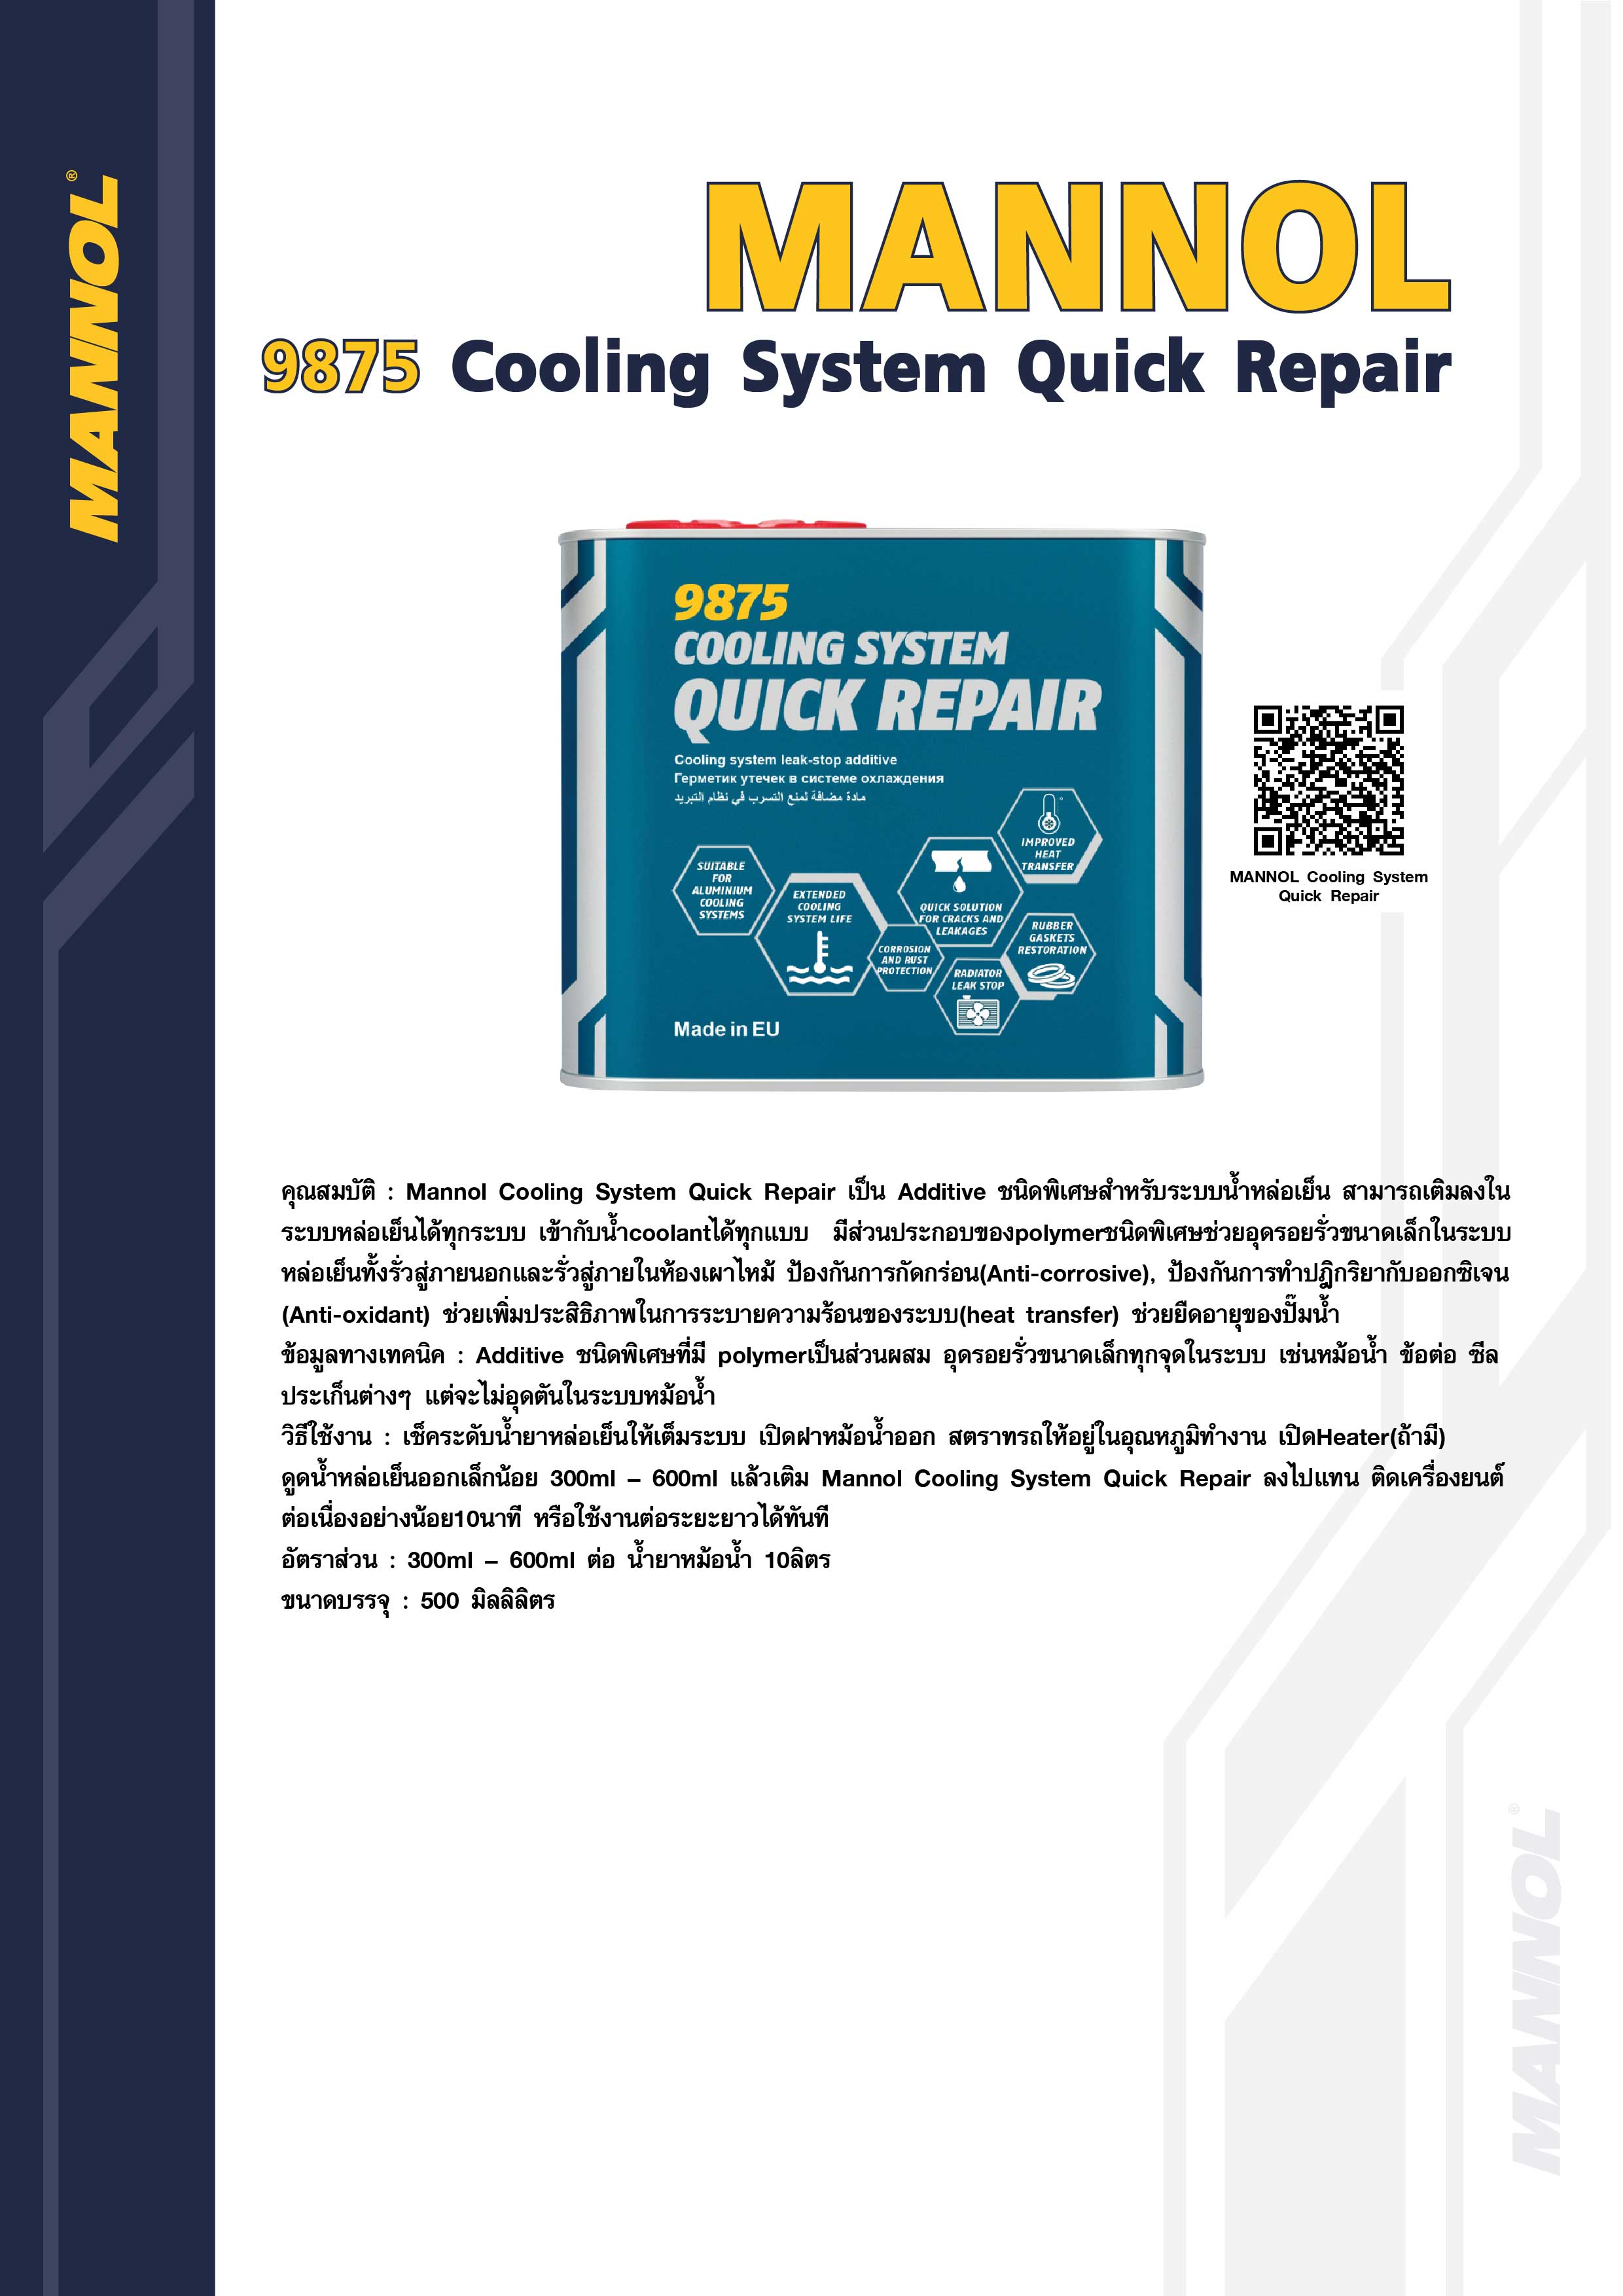 Mannol Cooling System Quick Repair